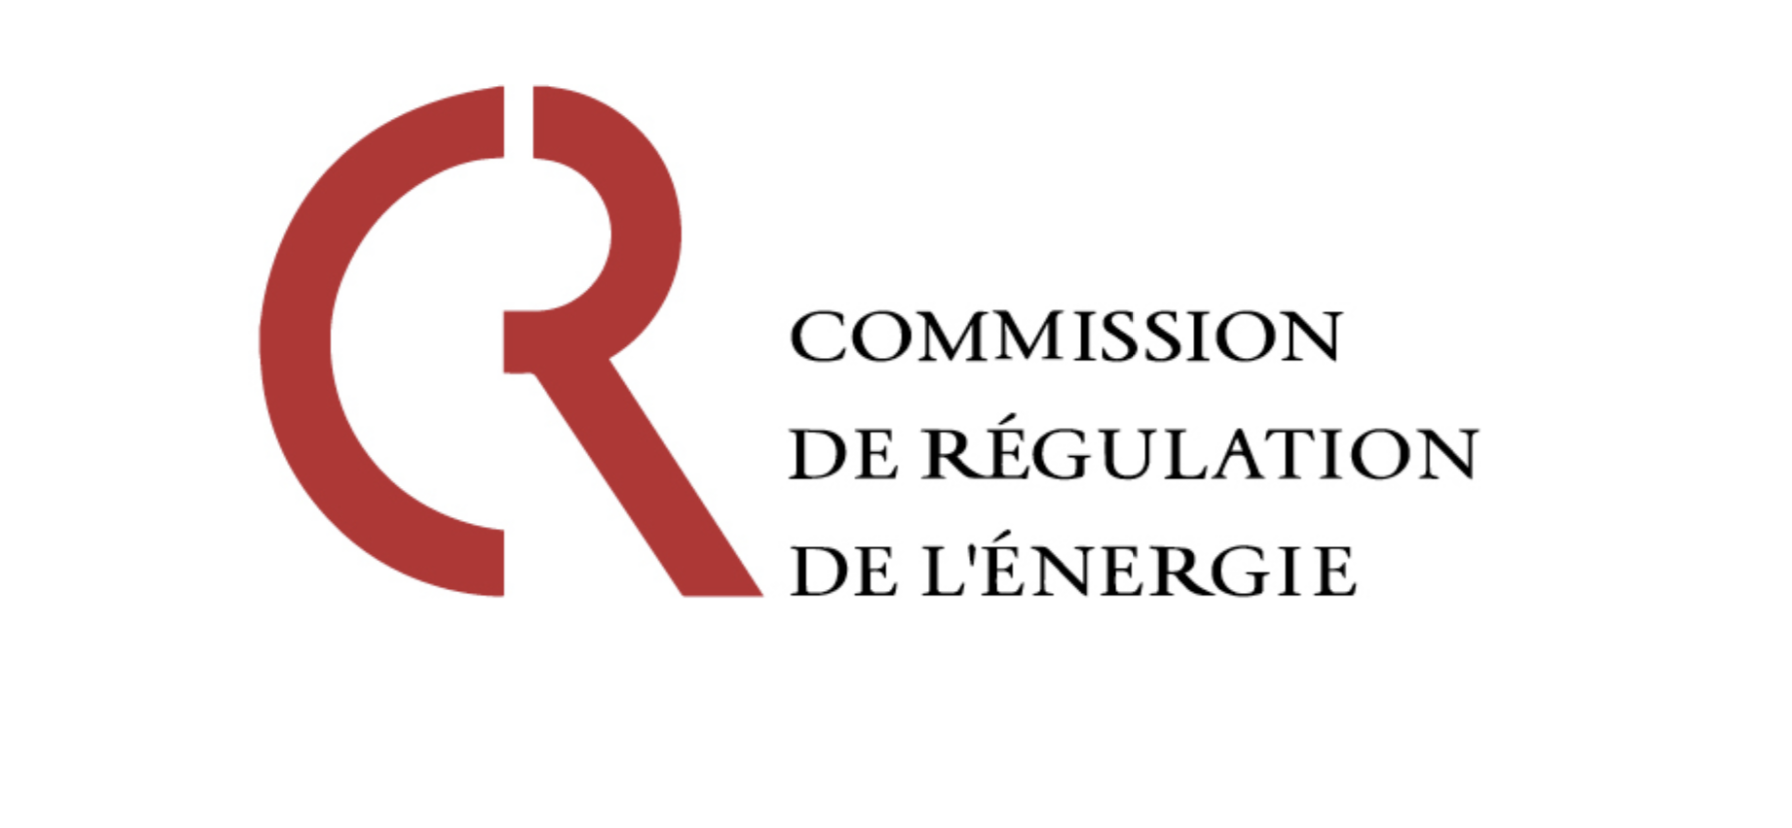 Commission_de_Régulation_de_l'Energie